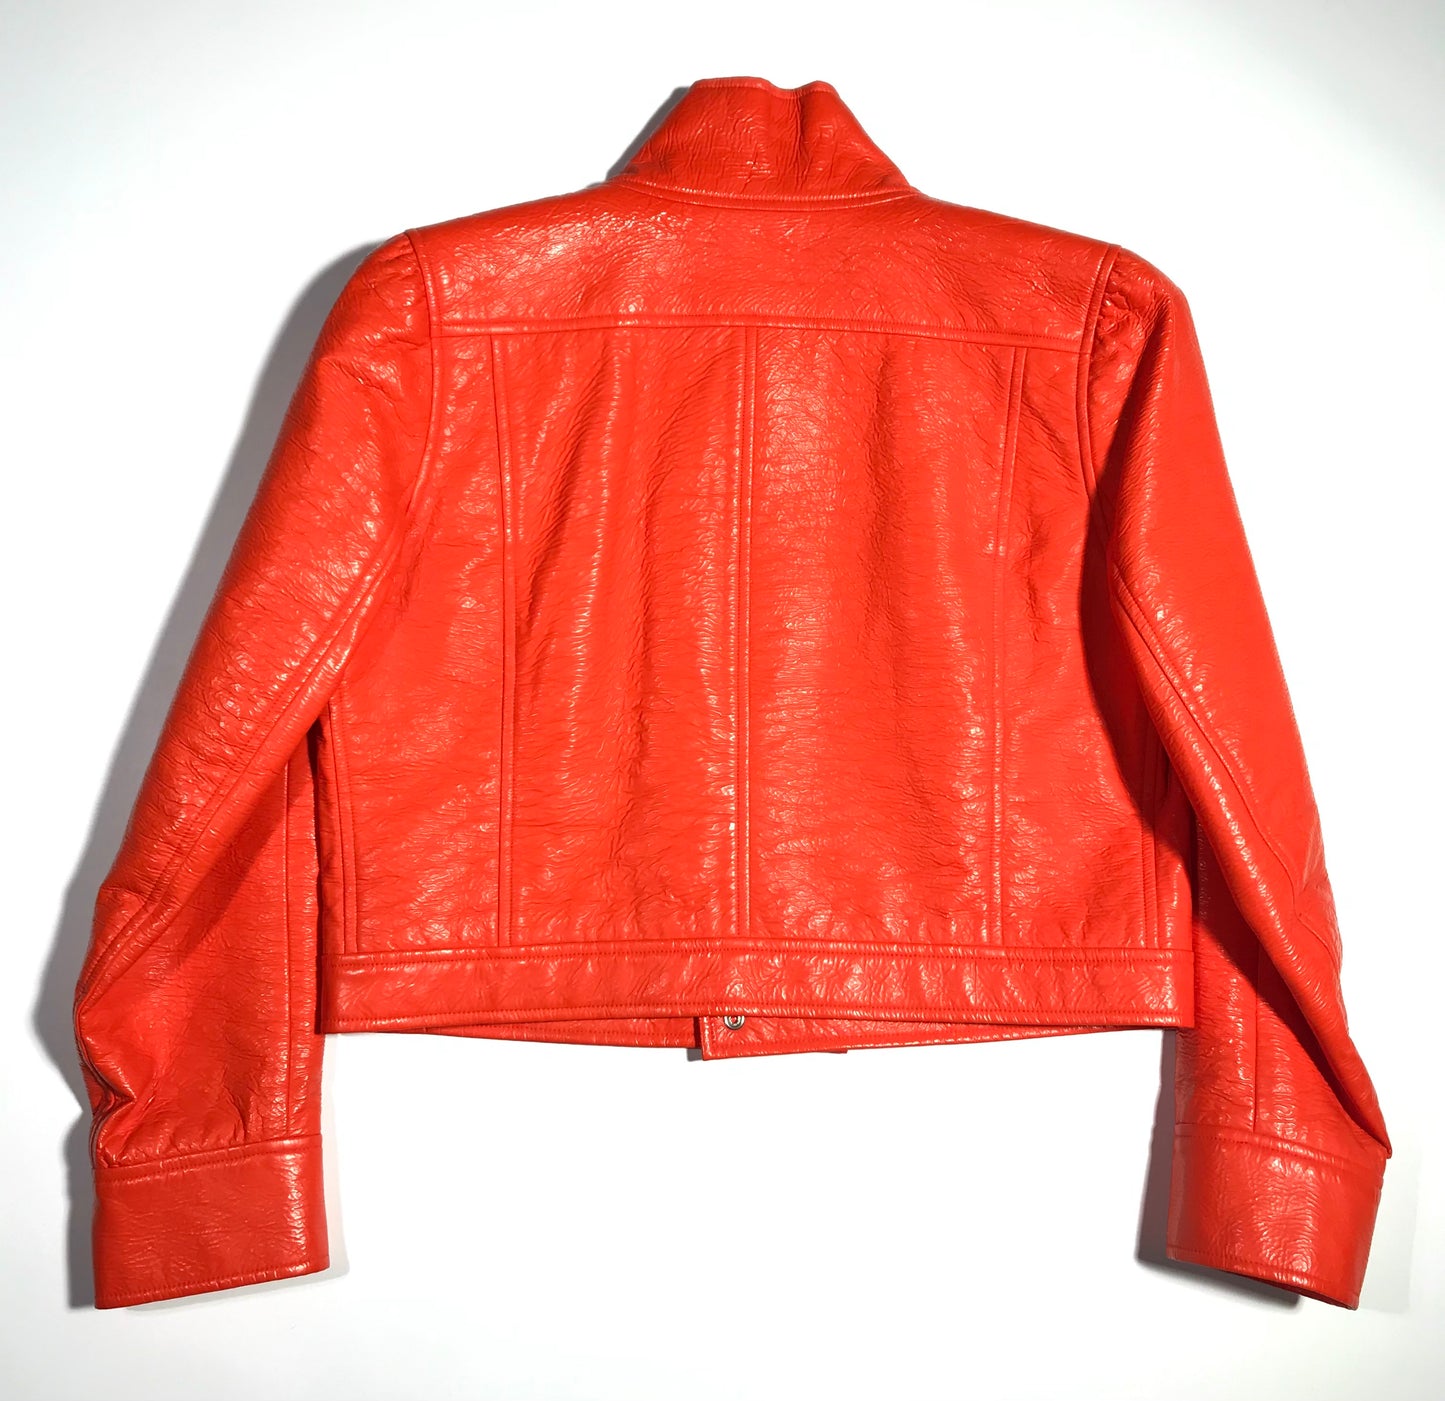 4. Courrèges orange vinyl jacket